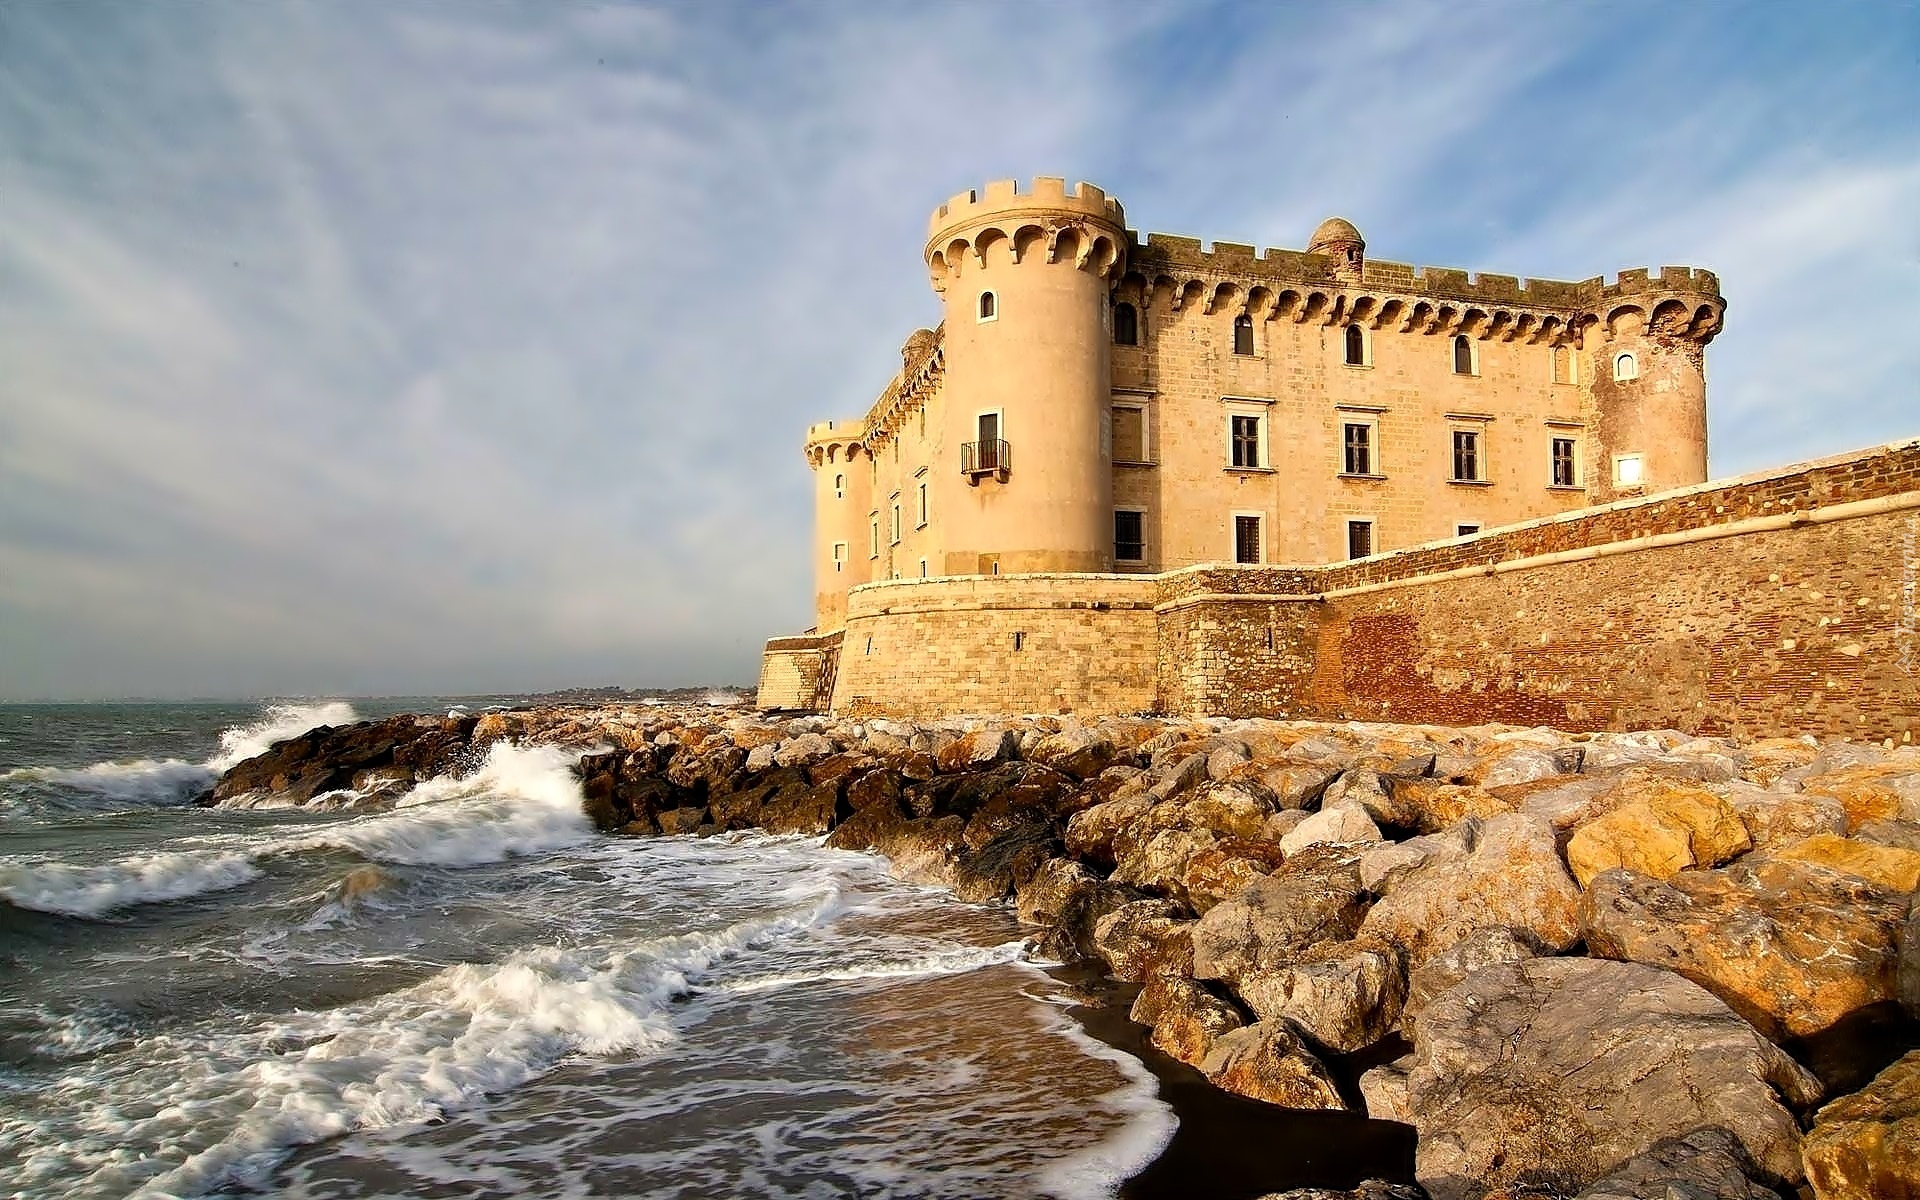 Zamek w Palo, Castello Odescalchi a Palo, Miejscowość Ladispoli, Włochy, Morze